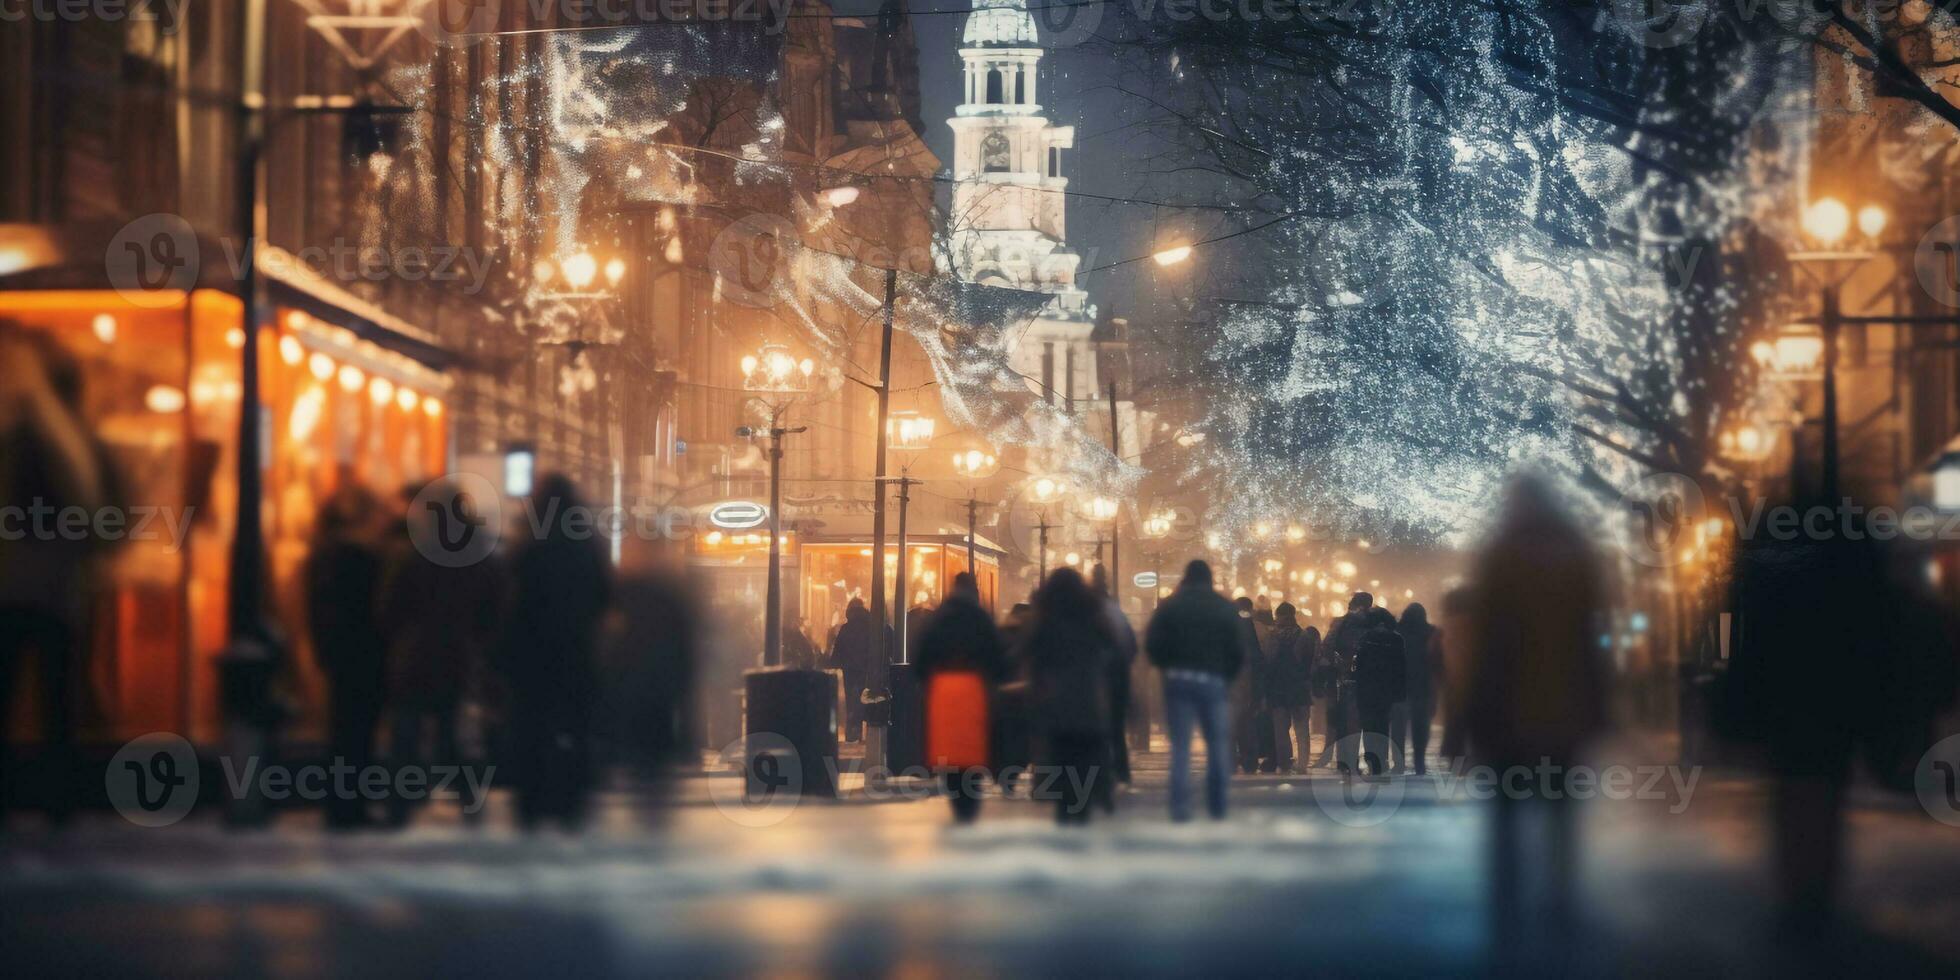 movimento borrado rua Visão e movimento borrado prople caminhando ao longo a rua dentro inverno estação, inverno Natal mercado foto